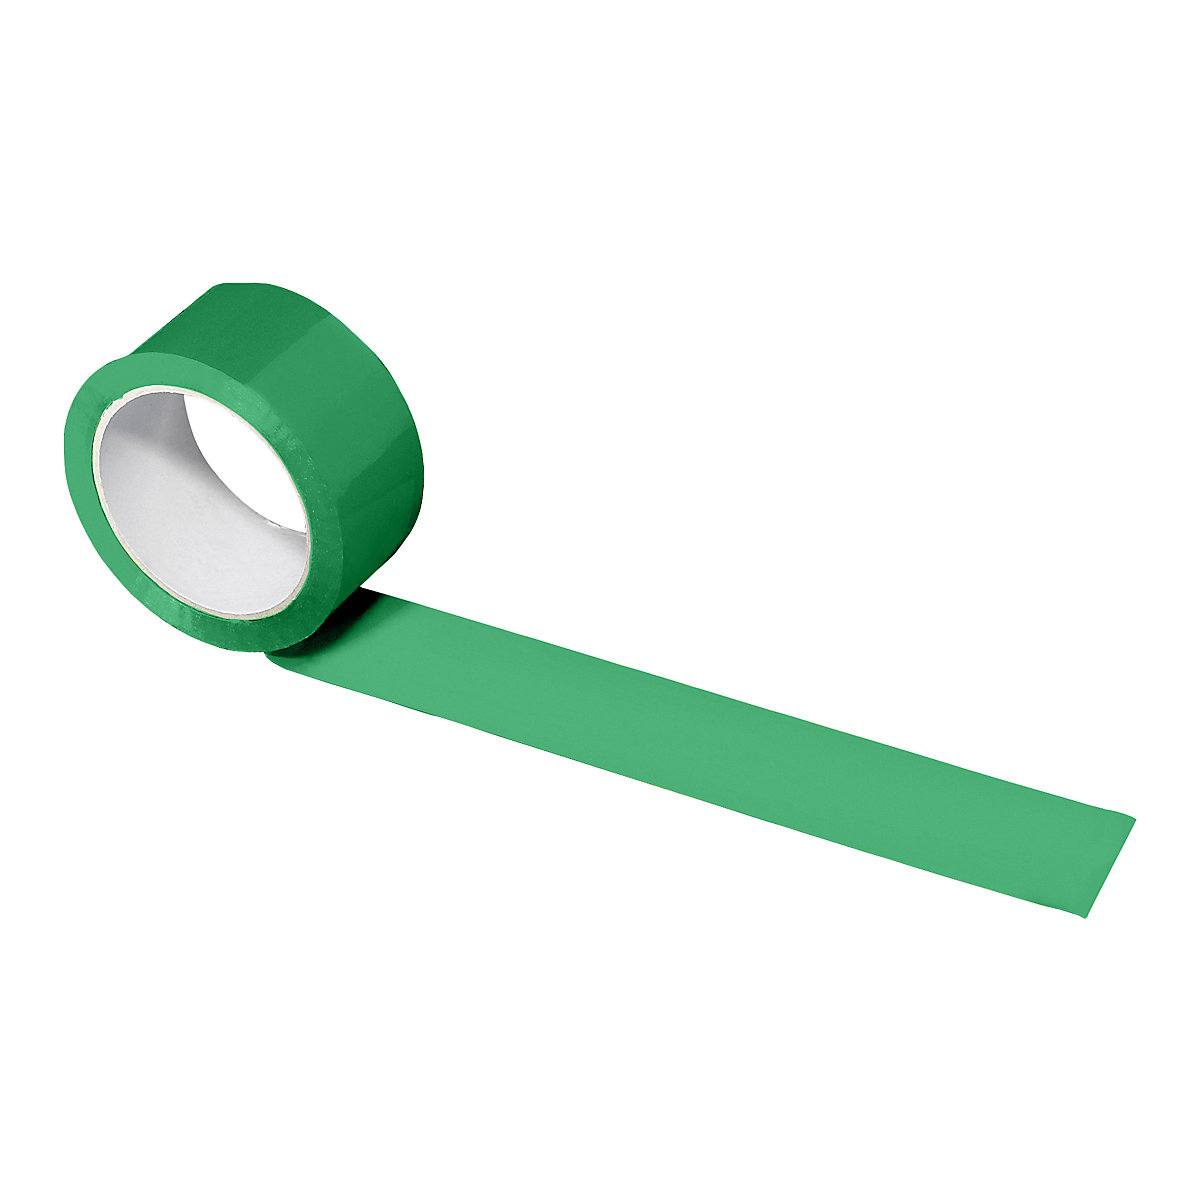 PP traka za pakiranje, u različitim bojama, pak. 36 rola, u zelenoj boji, širina trake 50 mm